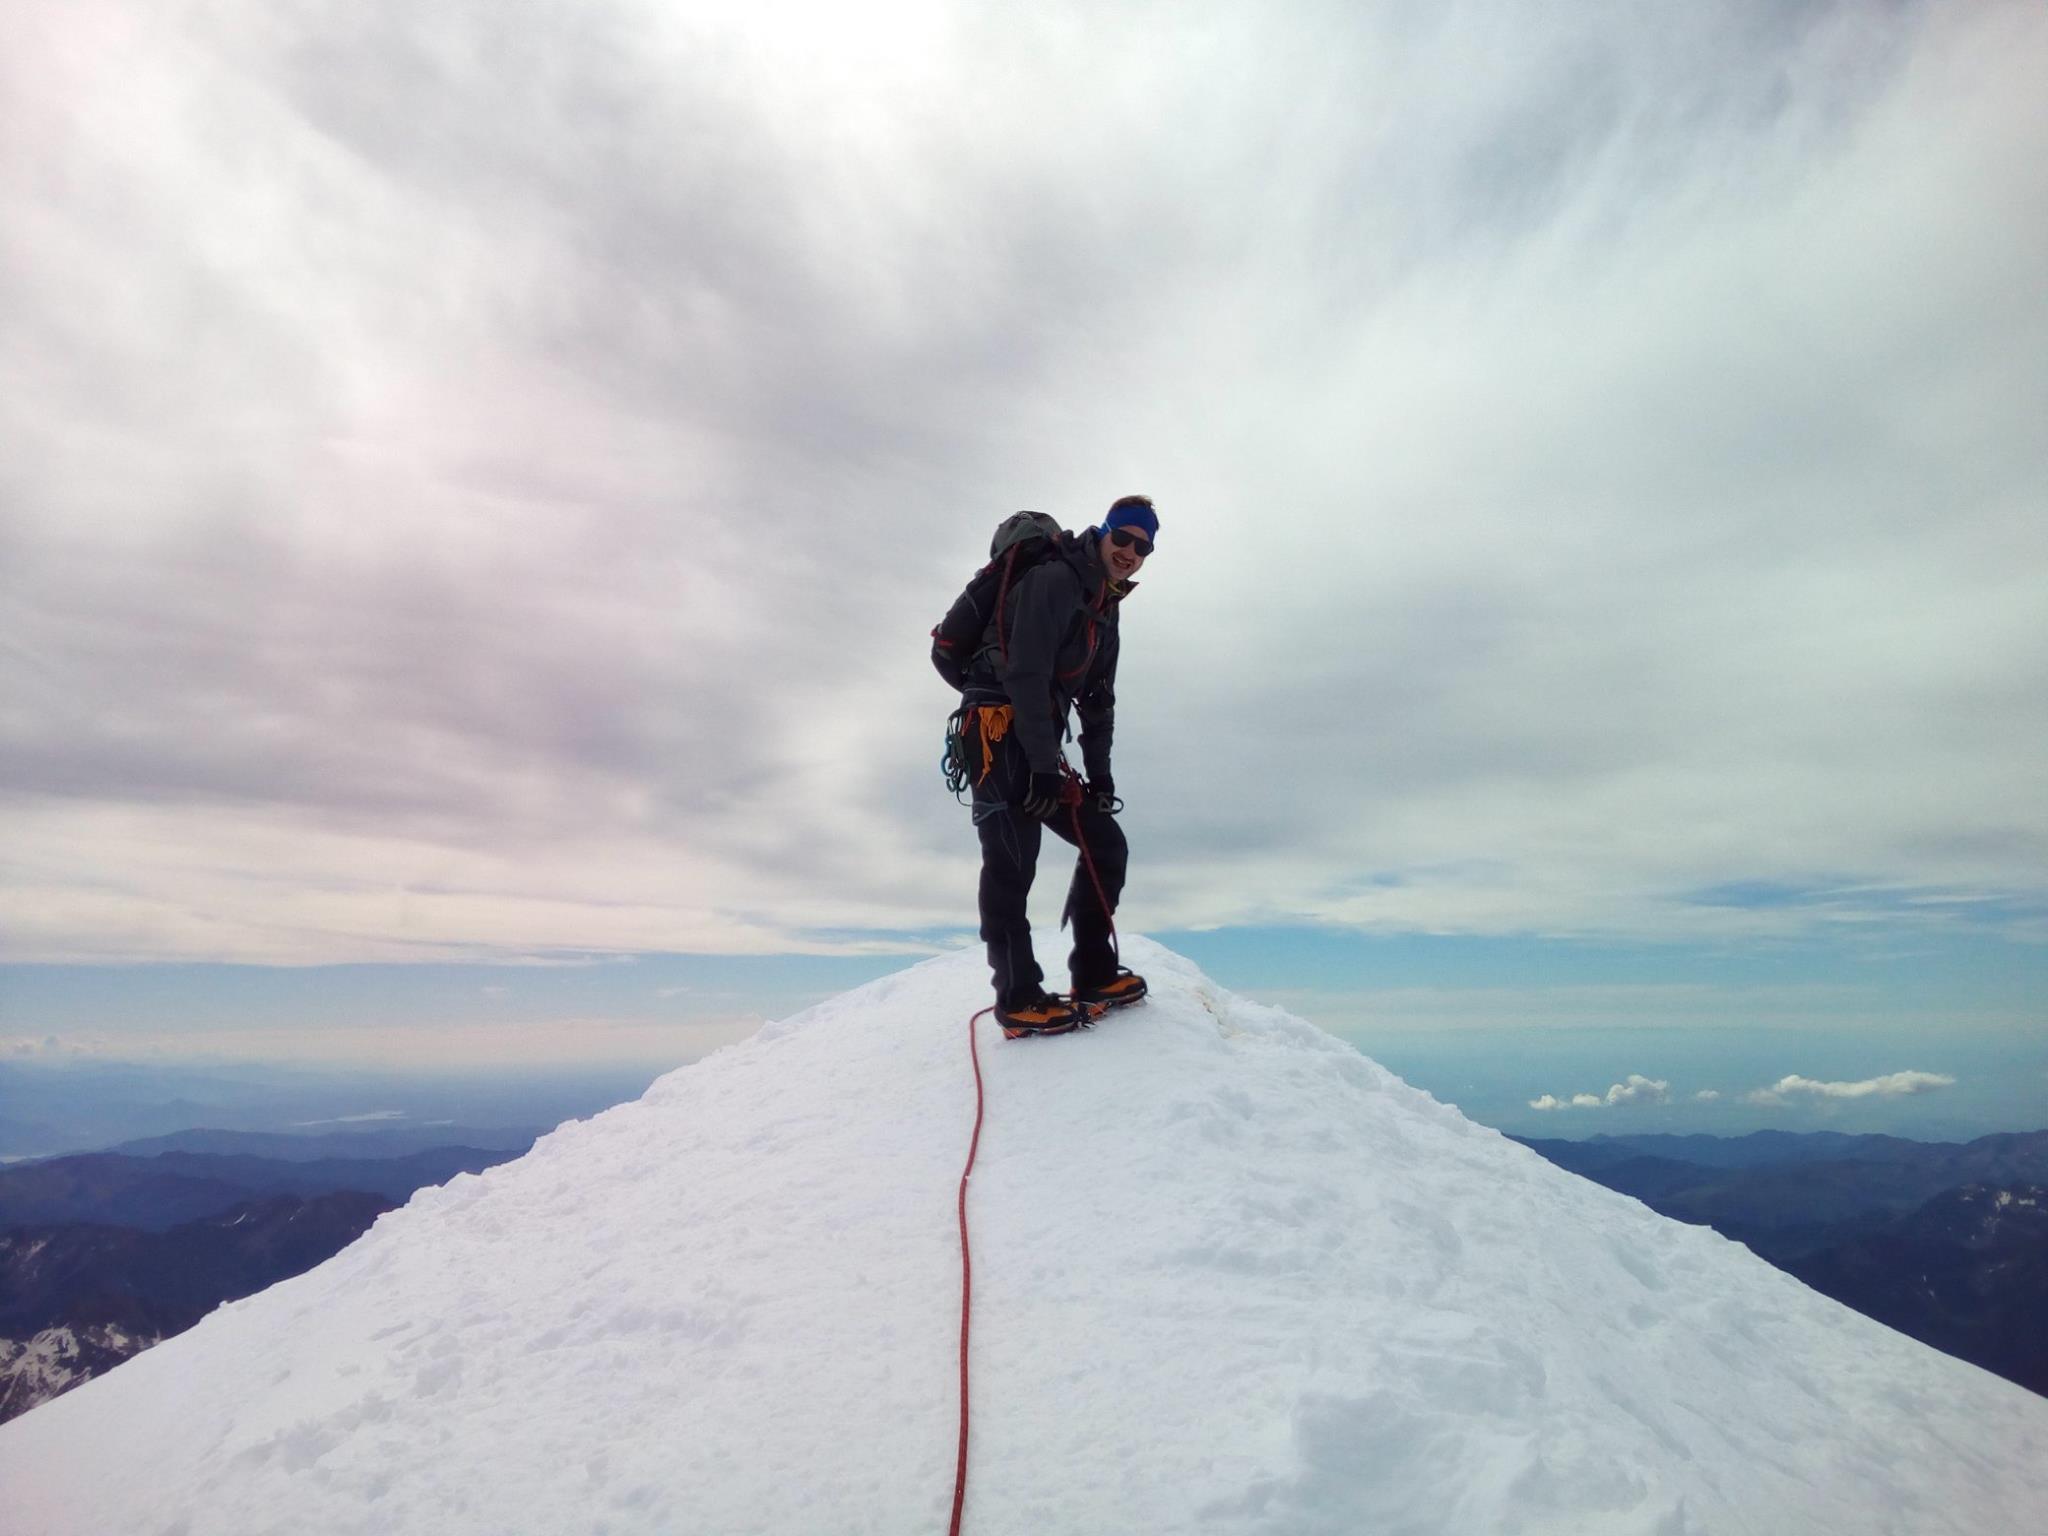 Ziele – Ladhak / Stok Kangri (6.153 m): Laudi will’s wissen und steigt seinem ersten 6.000er aufs Dach – ein Gastbeitrag